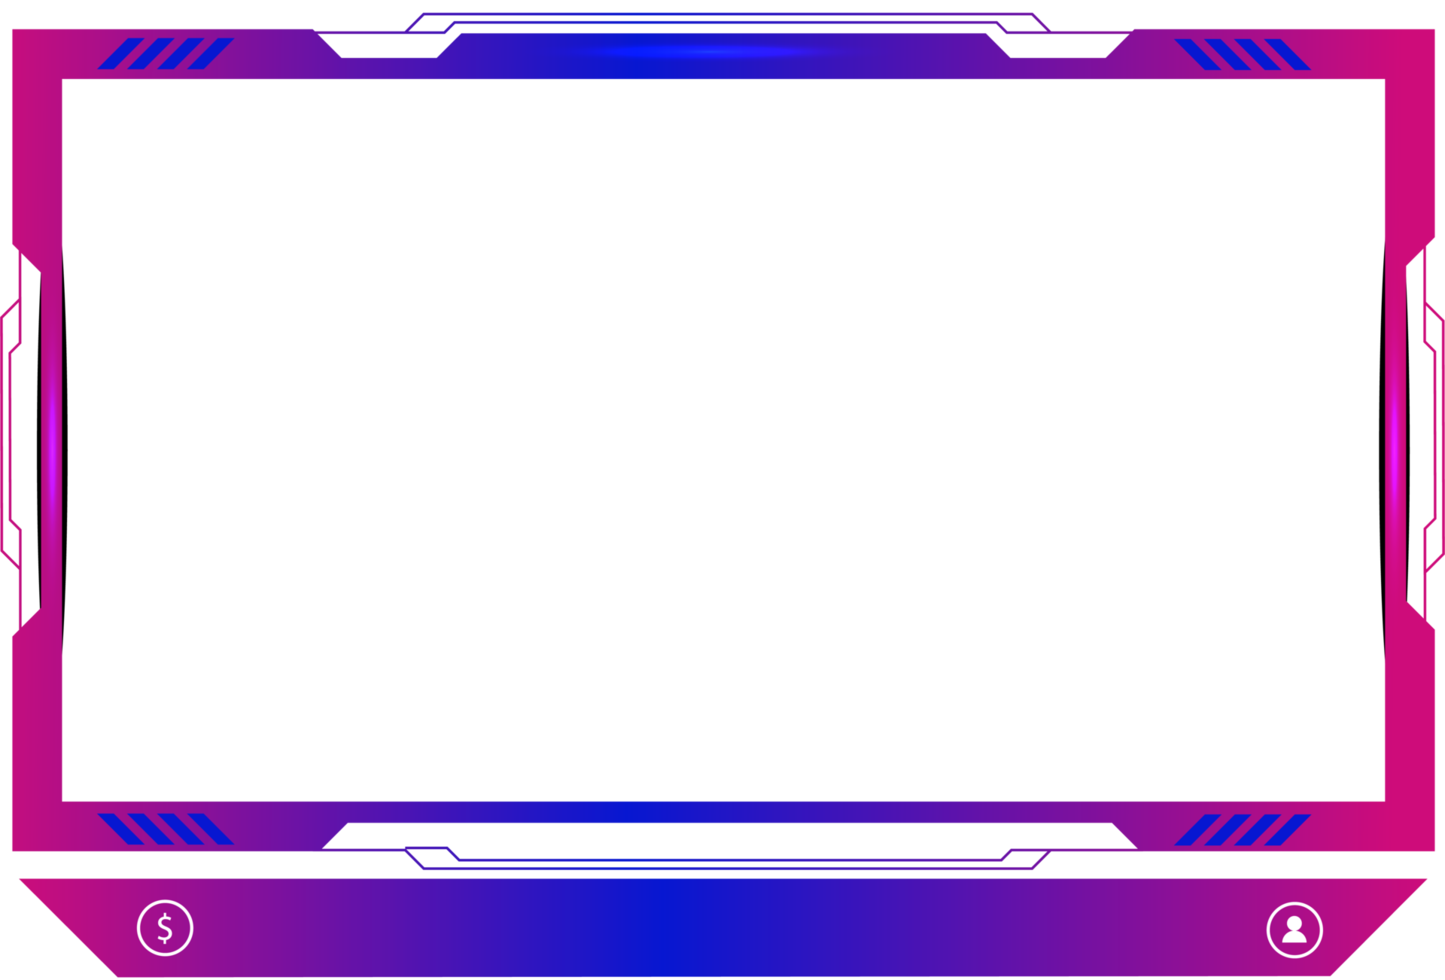 decoração de sobreposição de transmissão ao vivo com tom de cor rosa e azul feminino. painel de tela de jogos online e design de borda para jogadores. elementos de transmissão ao vivo png com botões coloridos.